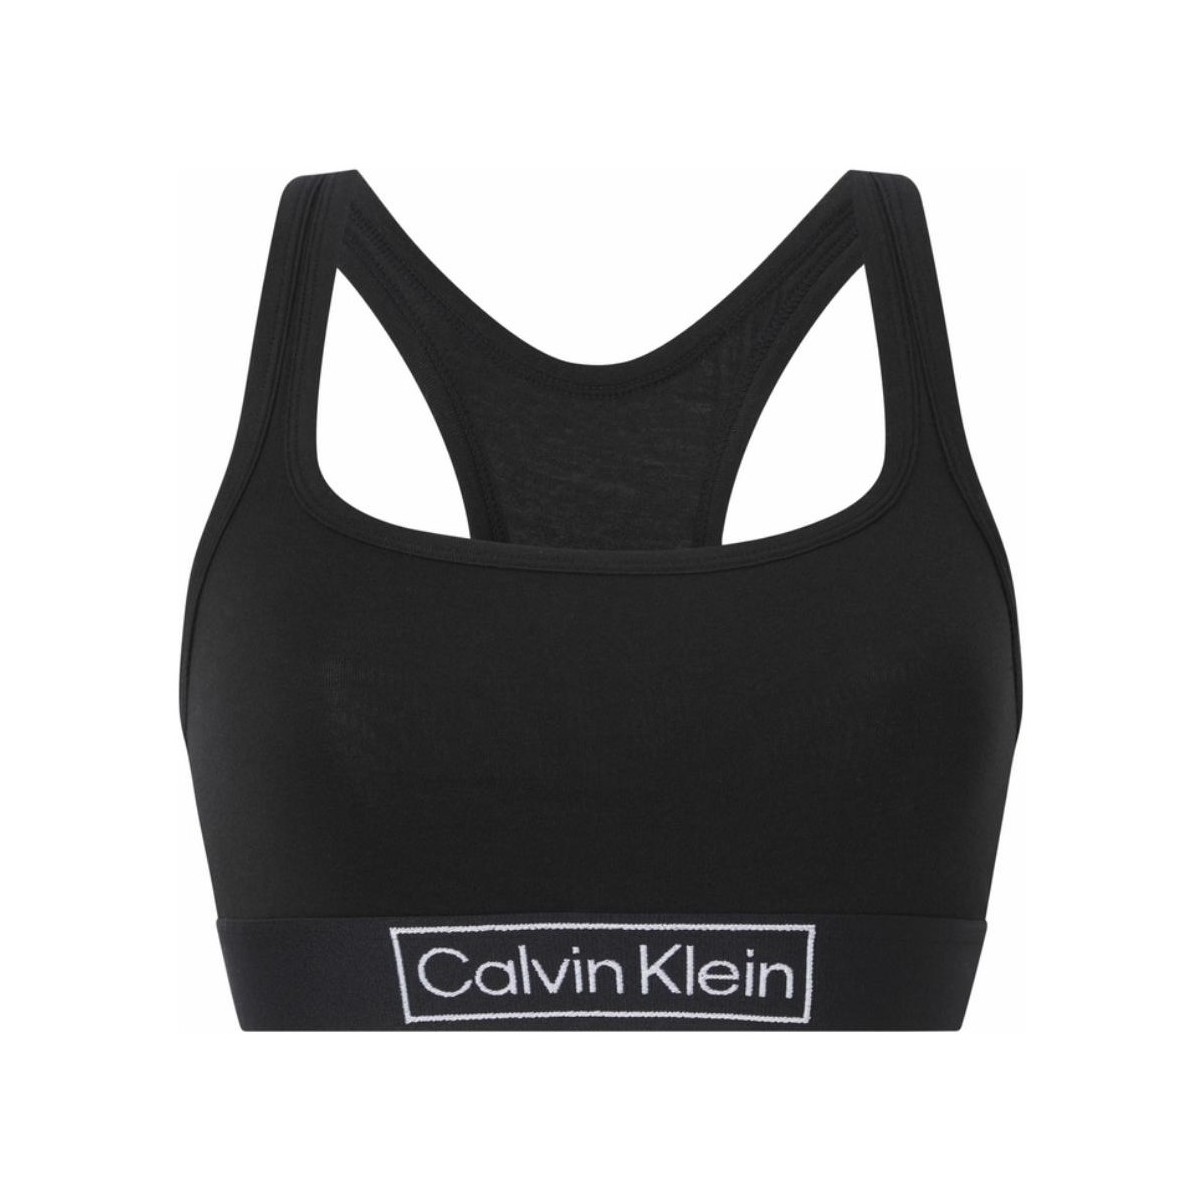 Sous-vêtements Femme Calvin Klein Calcinha Carousel 3 Unidades Brassière de Sport  Ref 55652 Noir Noir